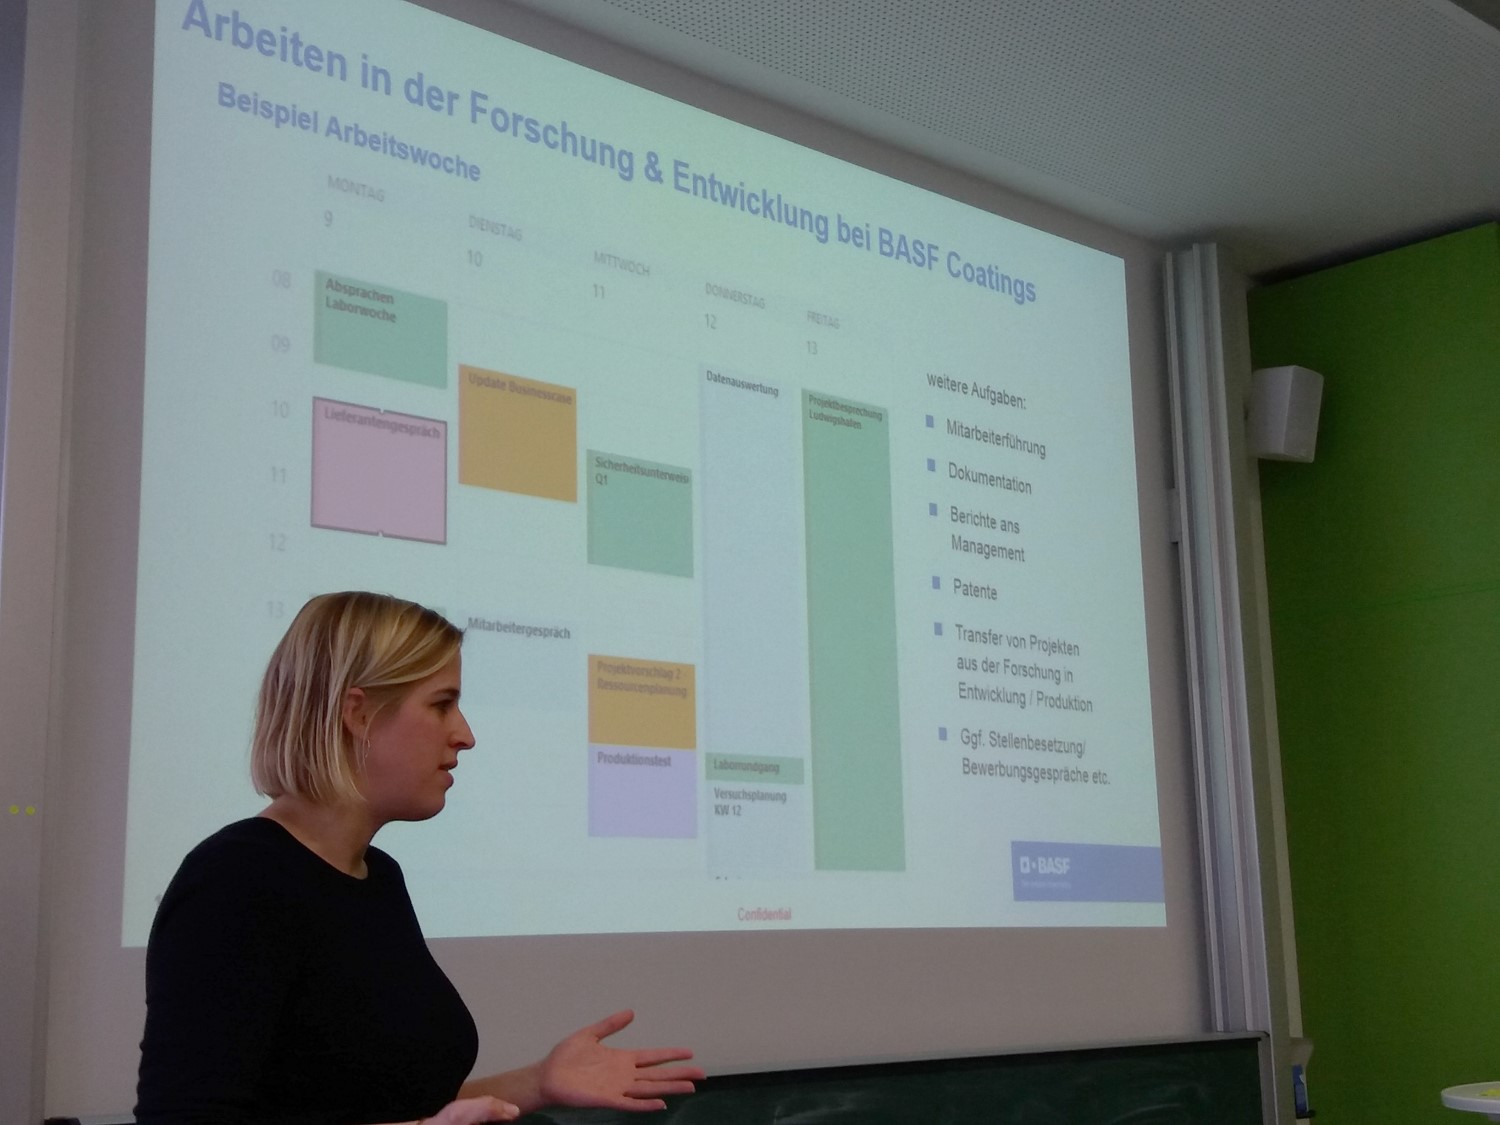 Dr. Lena Böhling vom BASF hält einen Vortrag über Laborleitung in Forschung und Entwicklung